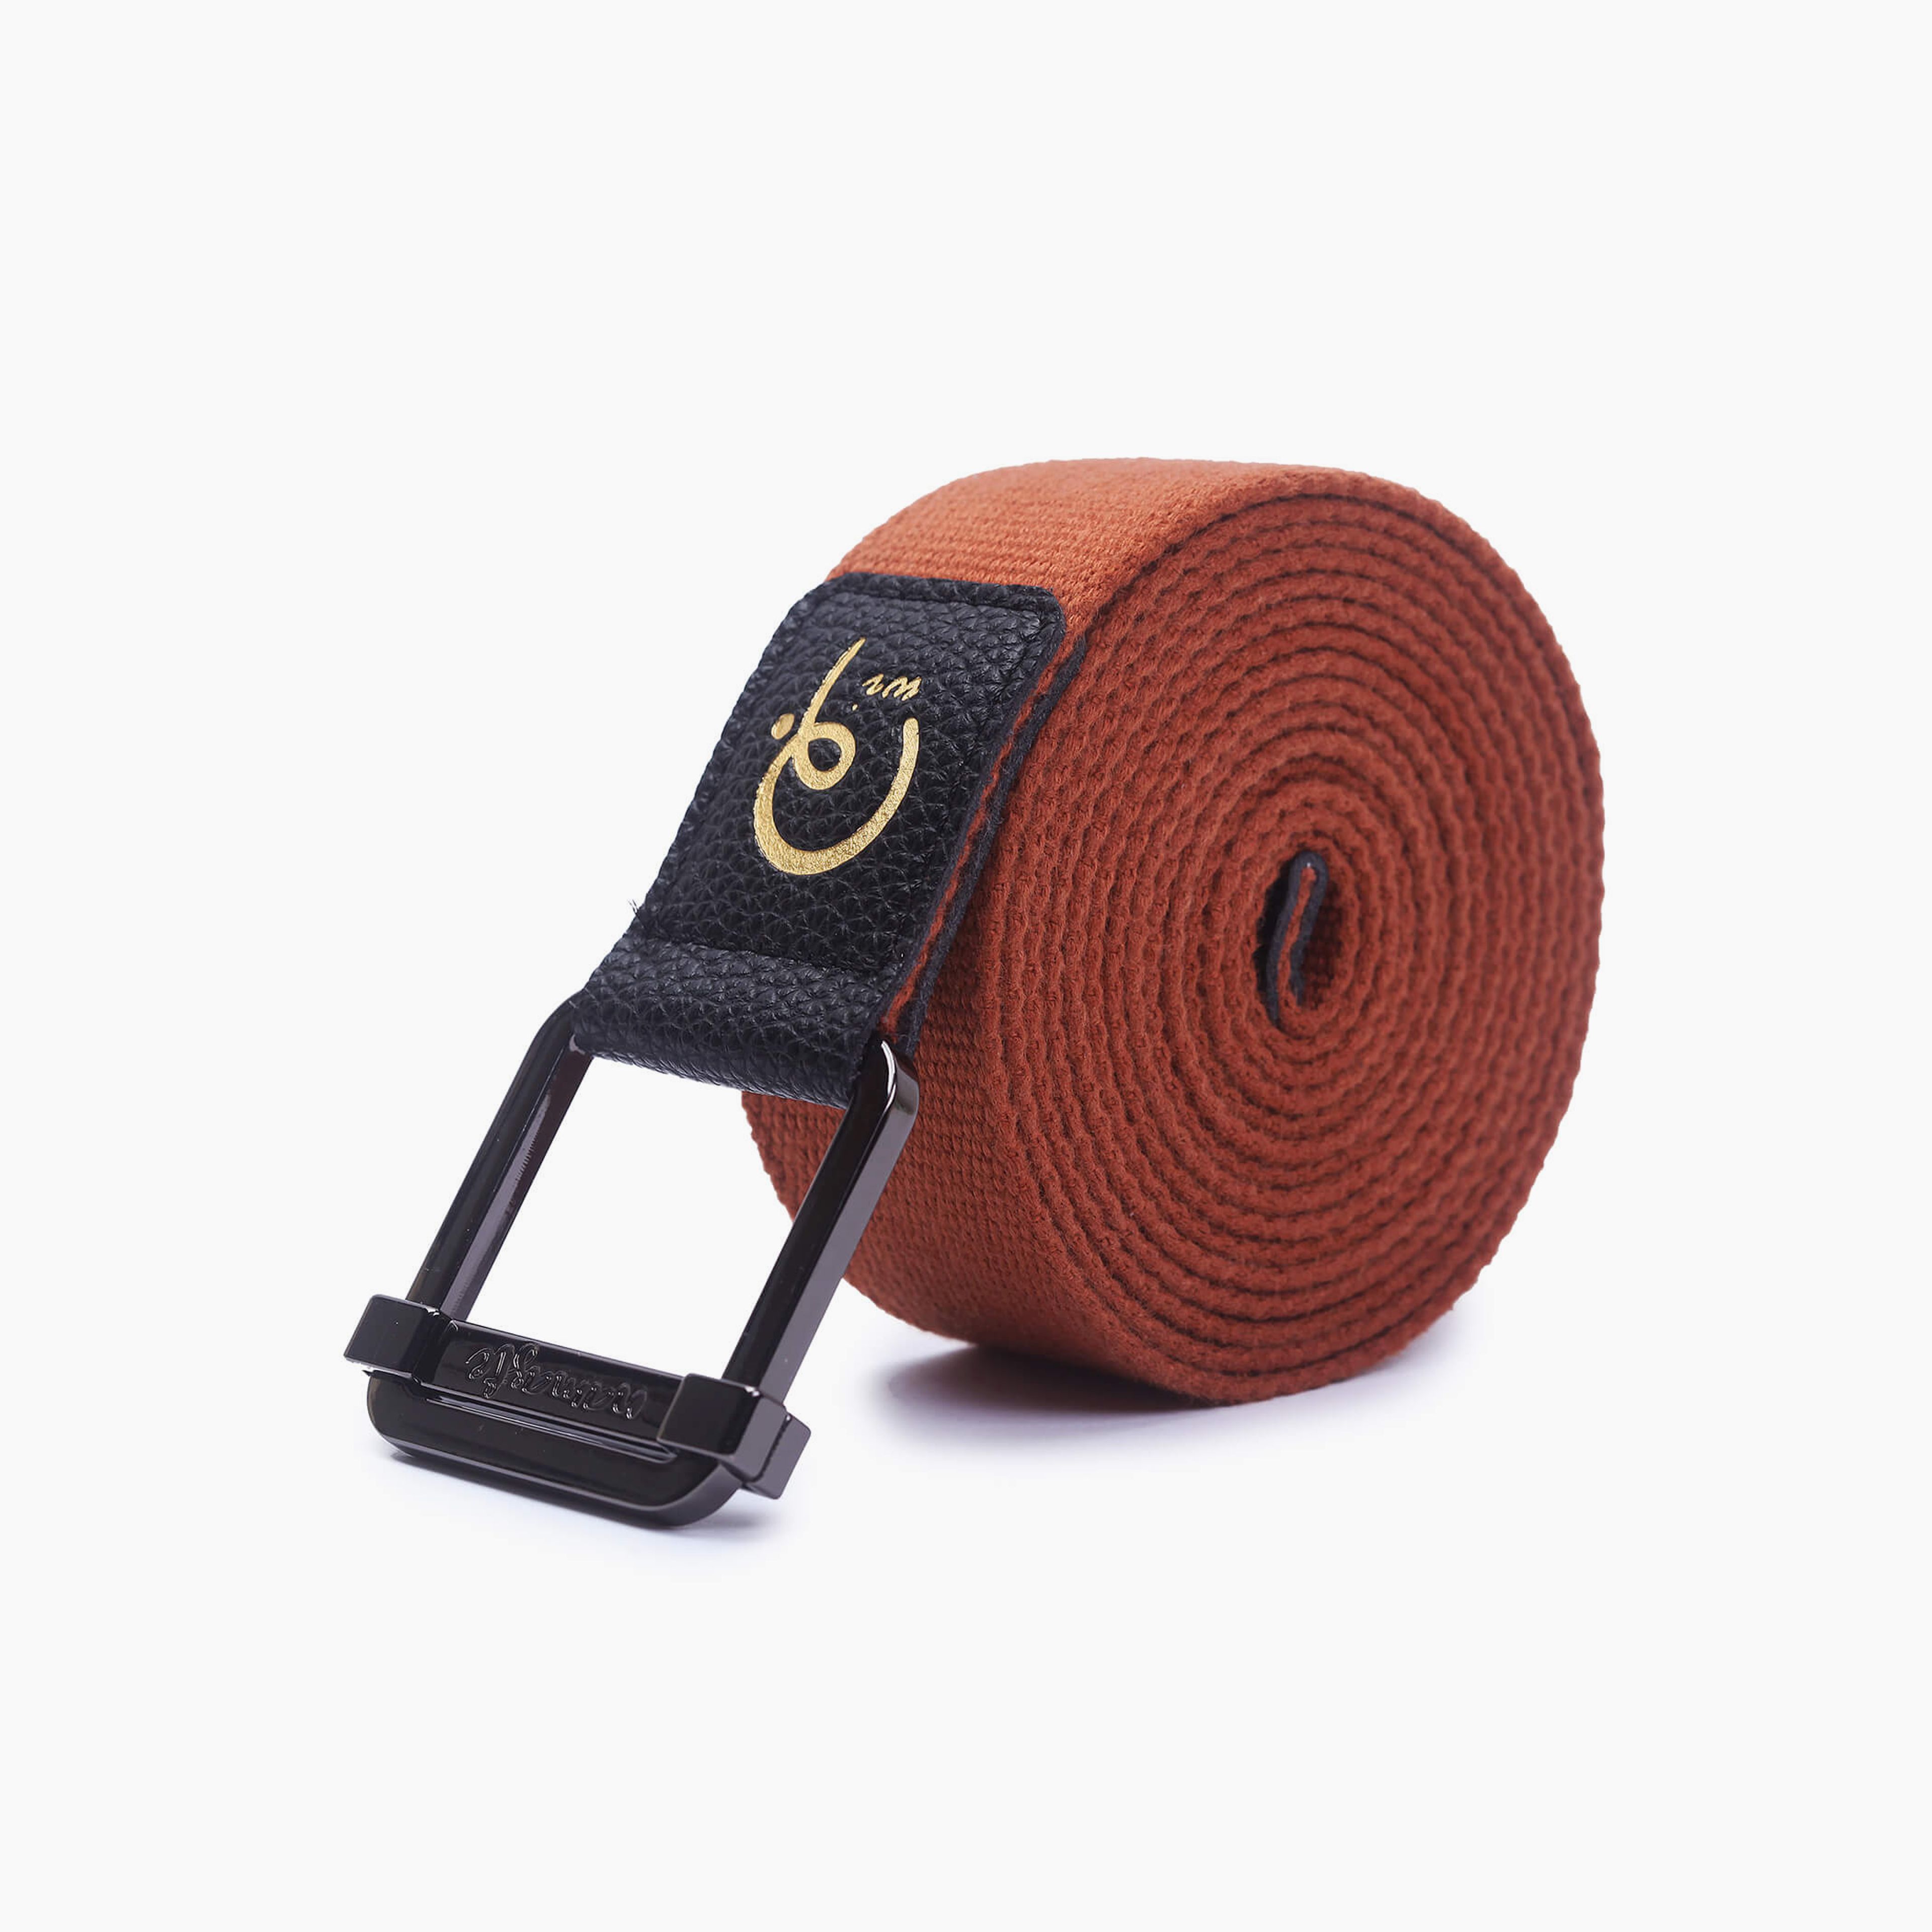 Wiworldandi Cotton Yoga Straps - Brown